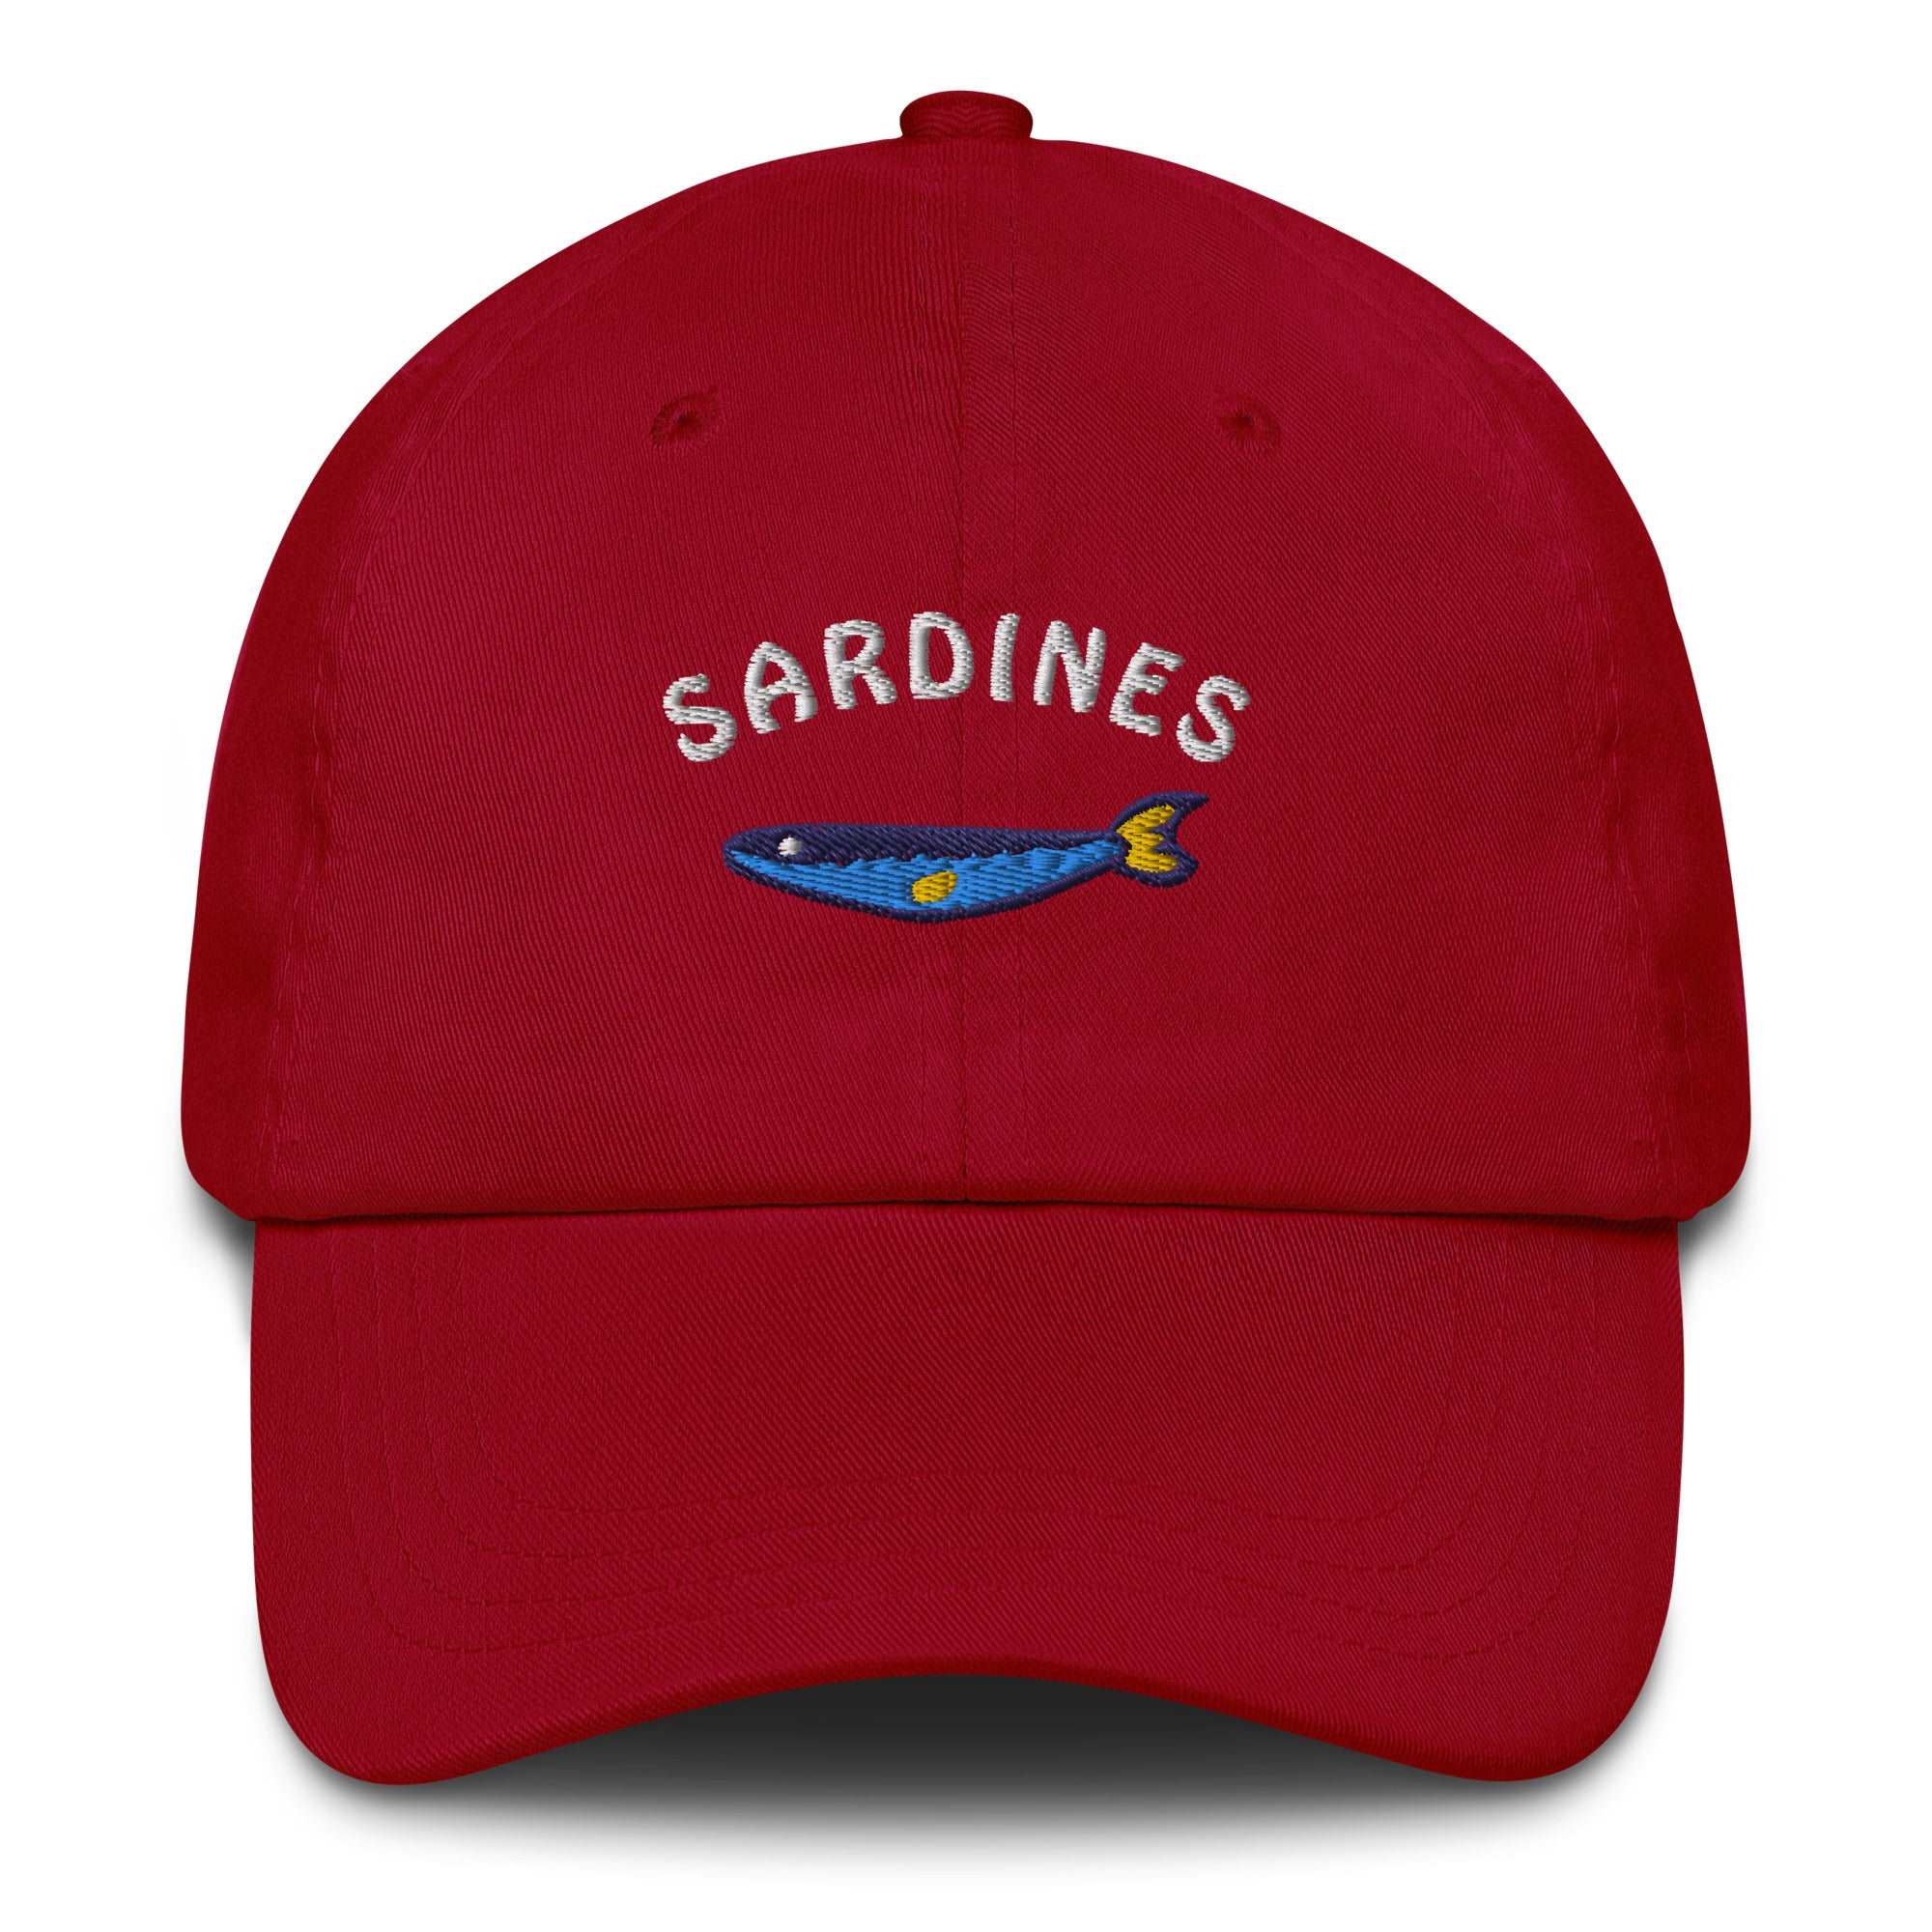 Sardines - Cap